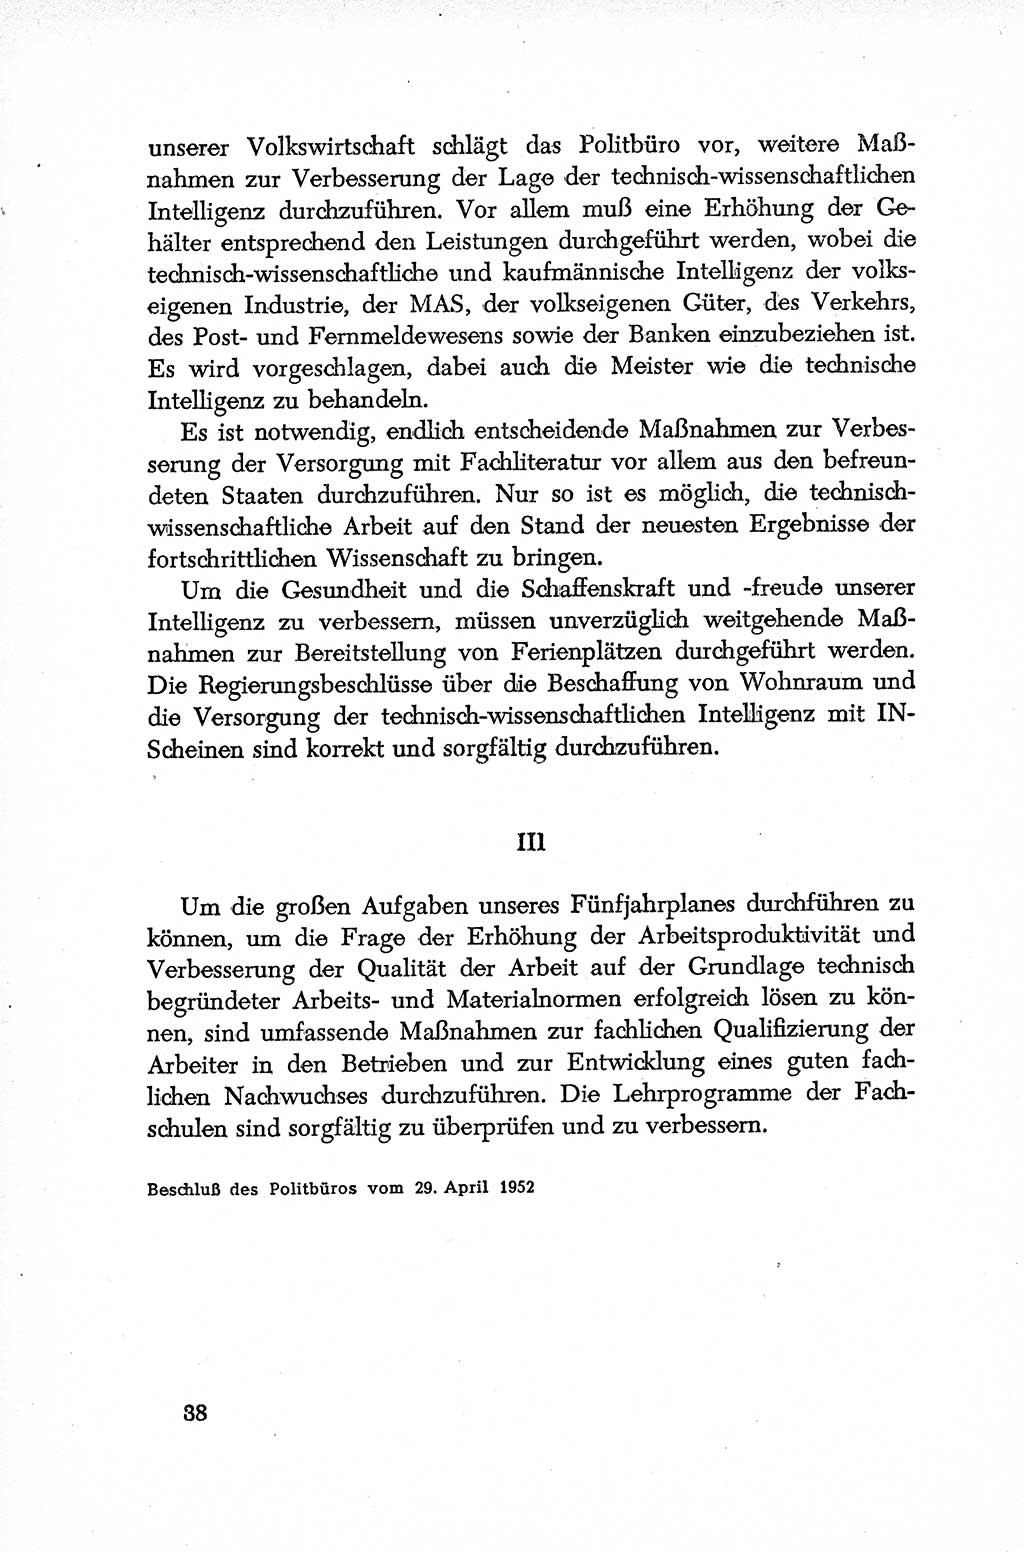 Dokumente der Sozialistischen Einheitspartei Deutschlands (SED) [Deutsche Demokratische Republik (DDR)] 1952-1953, Seite 38 (Dok. SED DDR 1952-1953, S. 38)